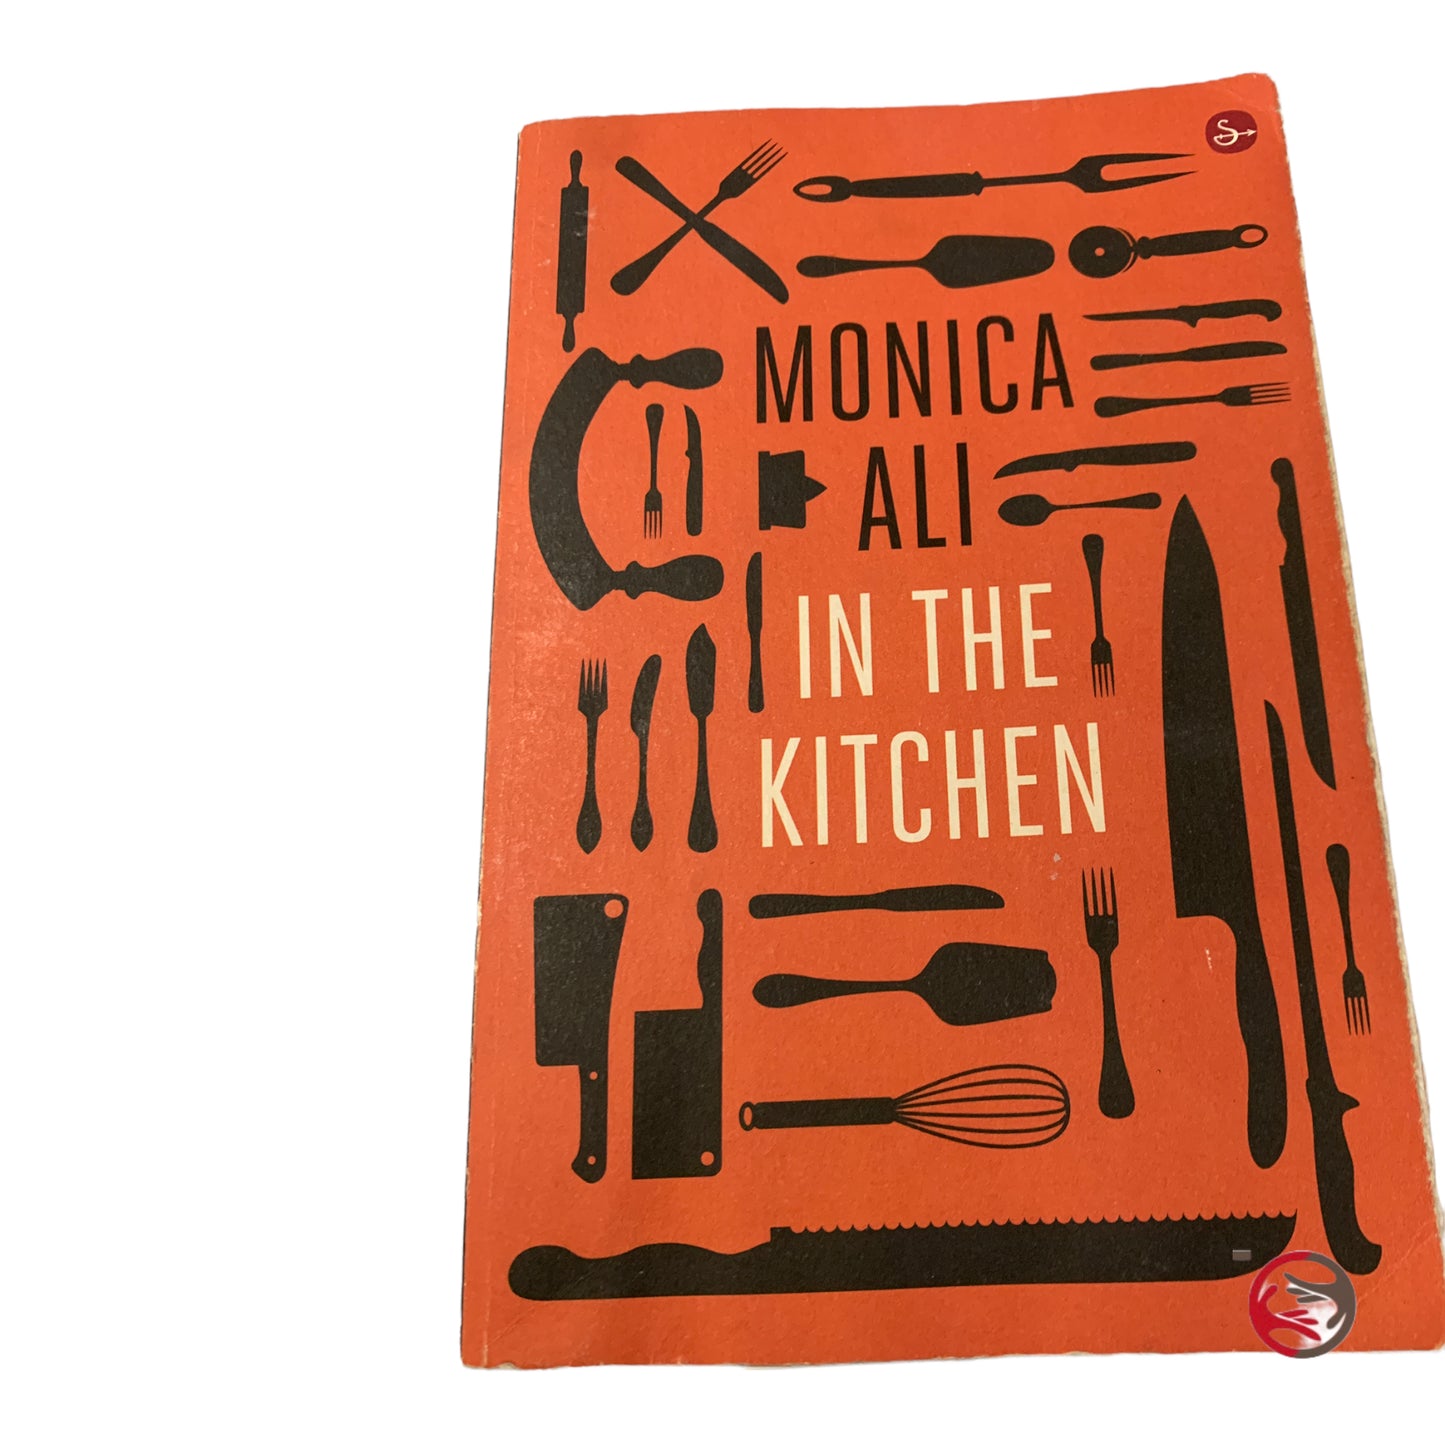 In The Kitchen - Monica Ali